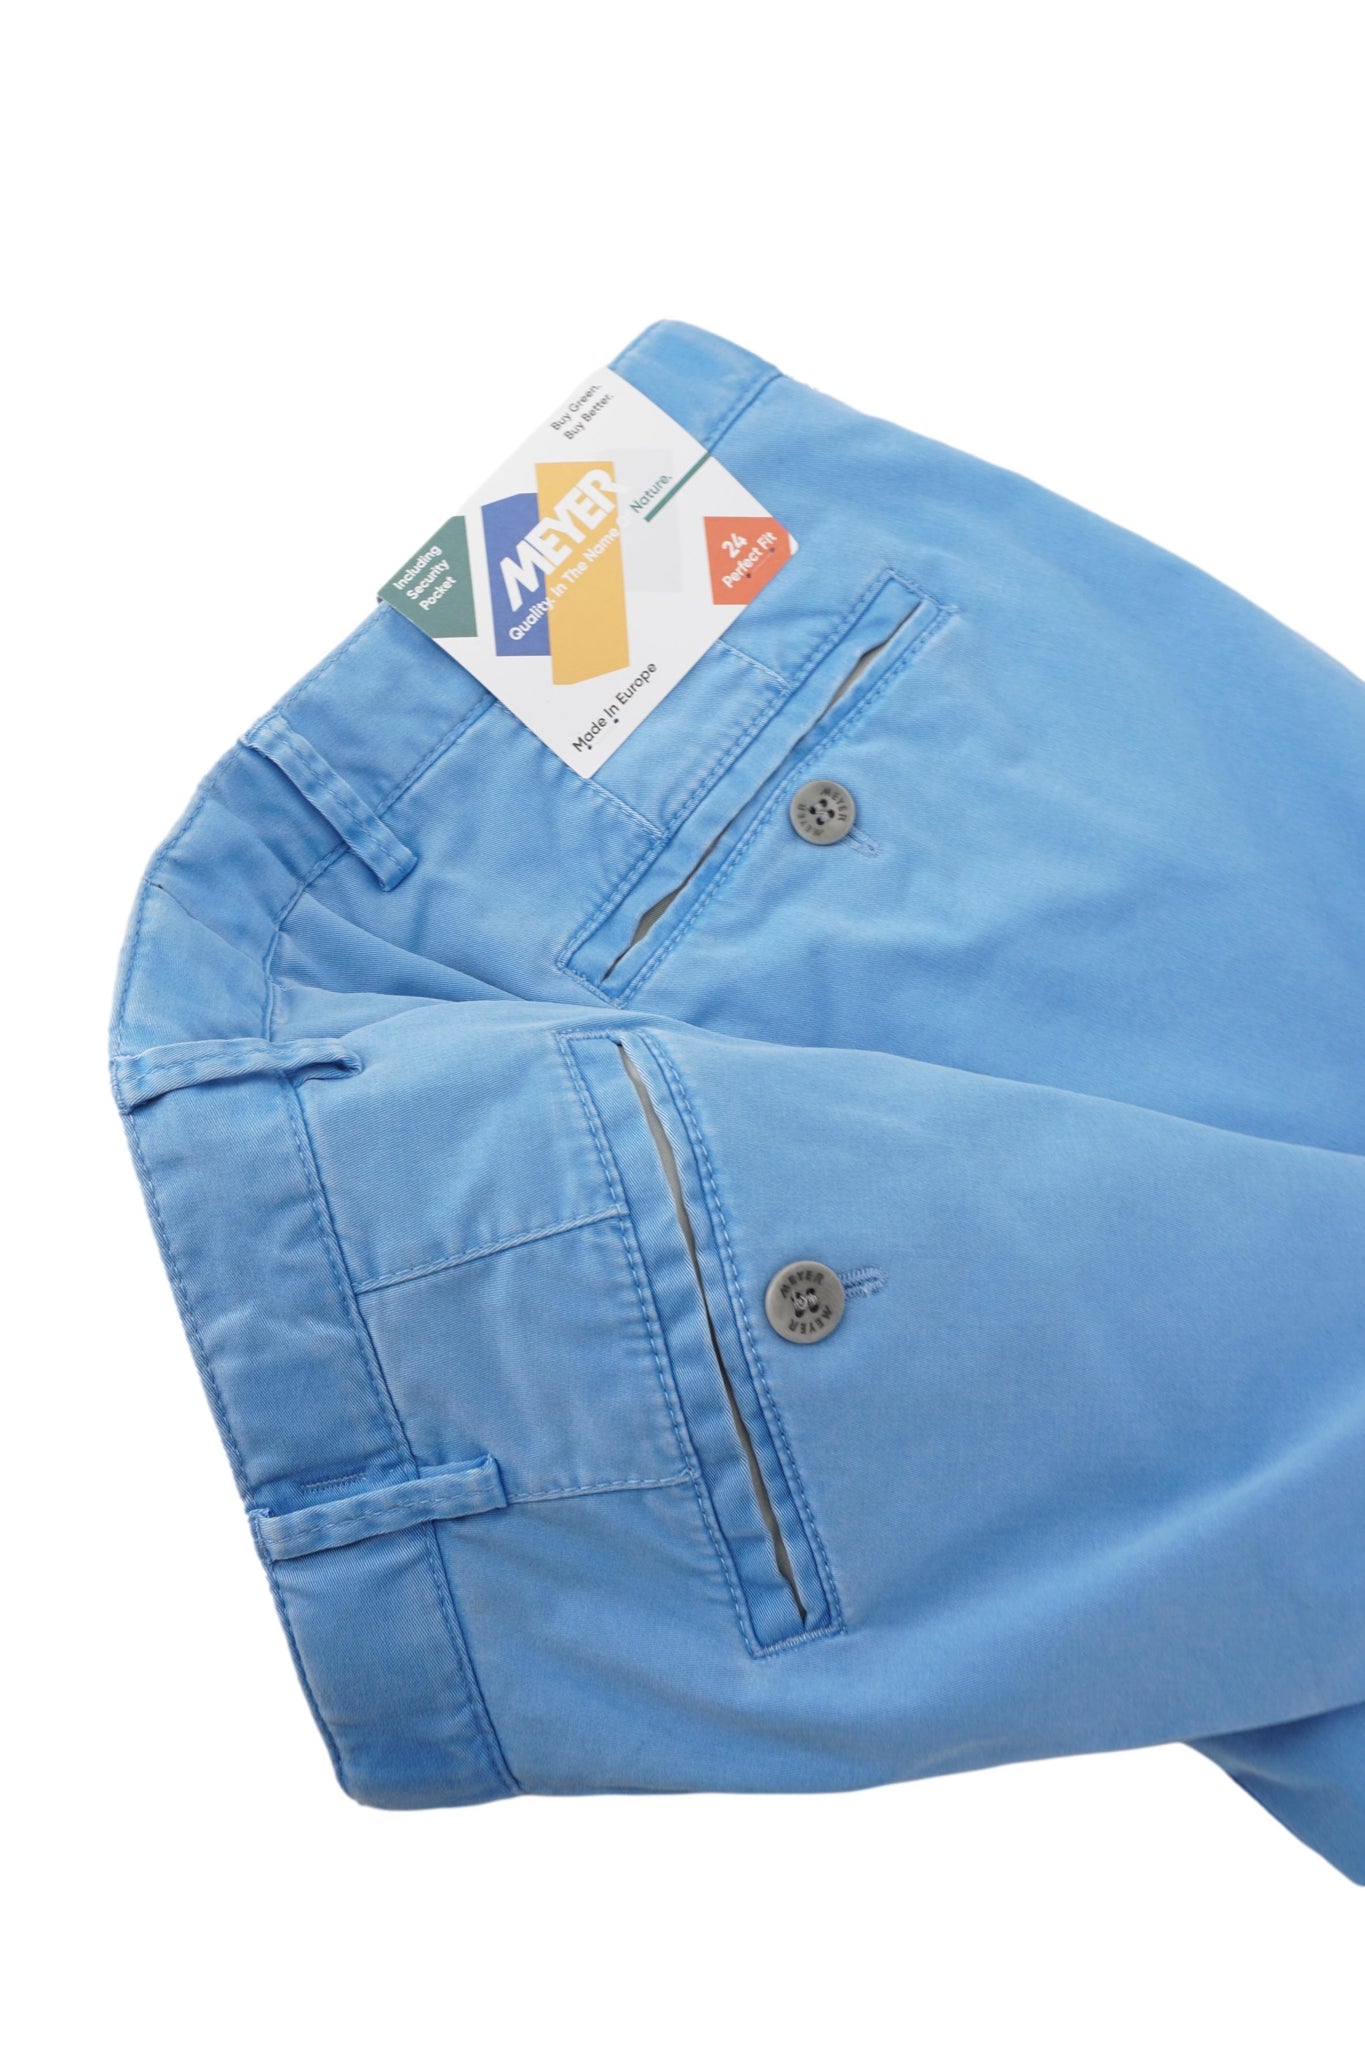 Pantalone Oslo in Cotone / Azzurro - Ideal Moda